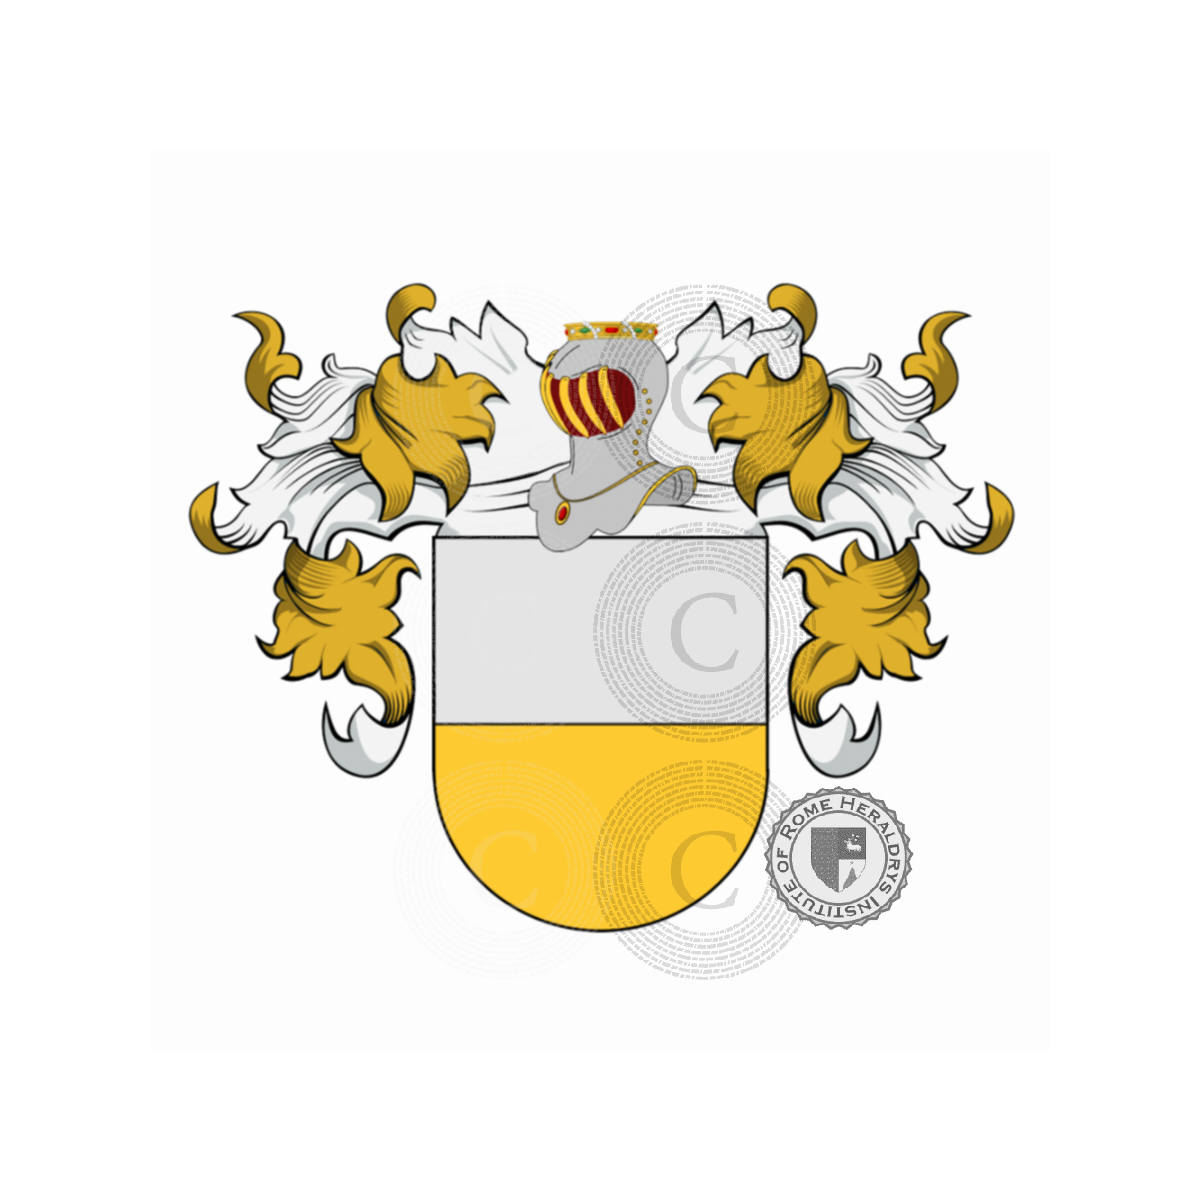 Coat of arms of familyPalencia, Palença